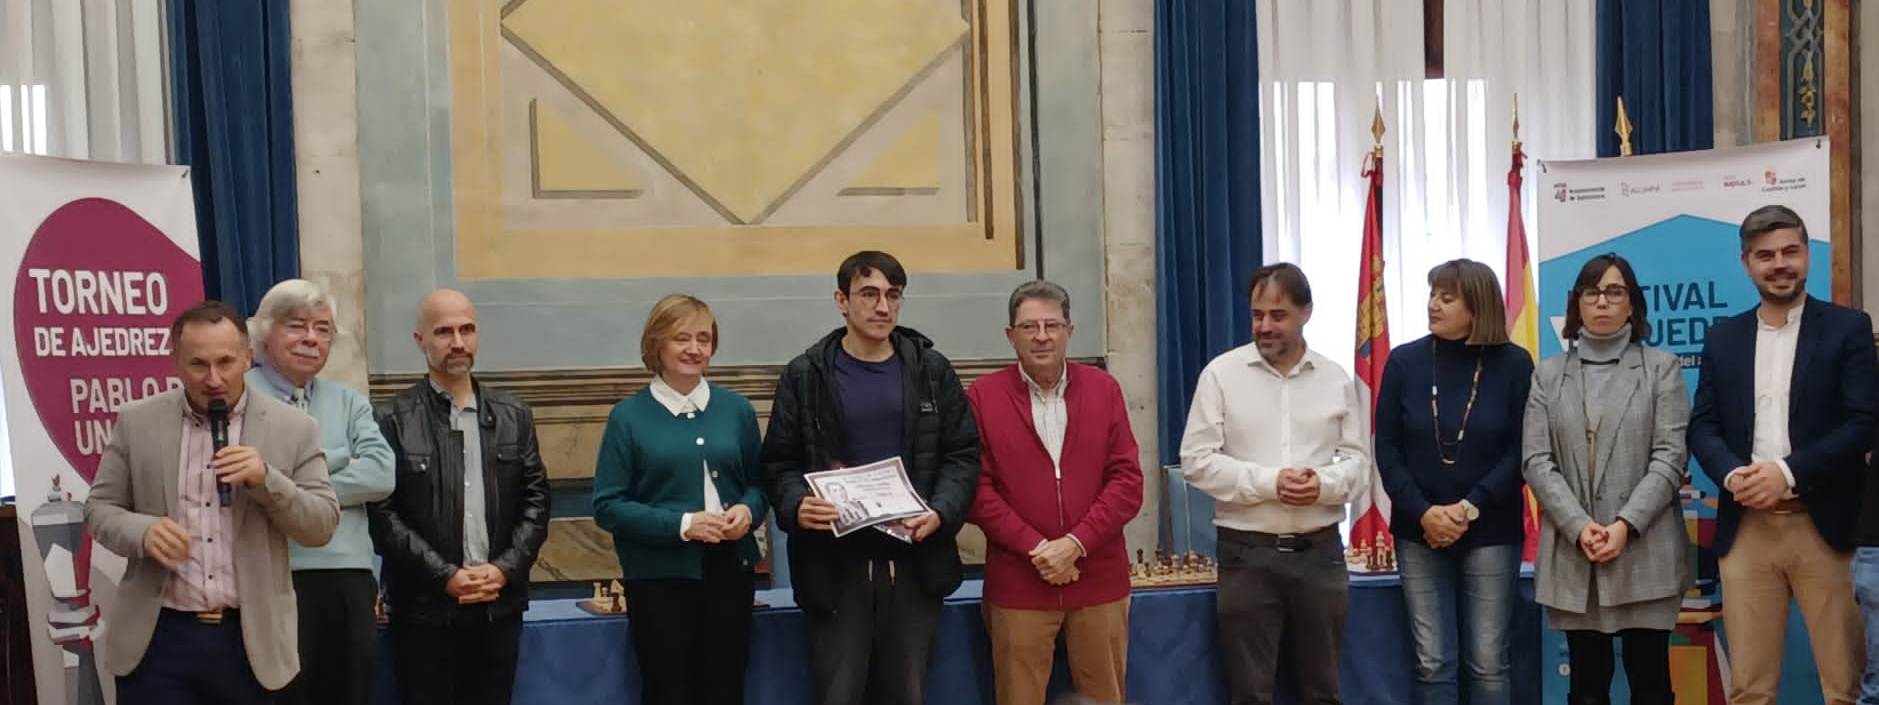 Jesús Martín Duque gana el III Torneo de Ajedrez Pablo de Unamuno